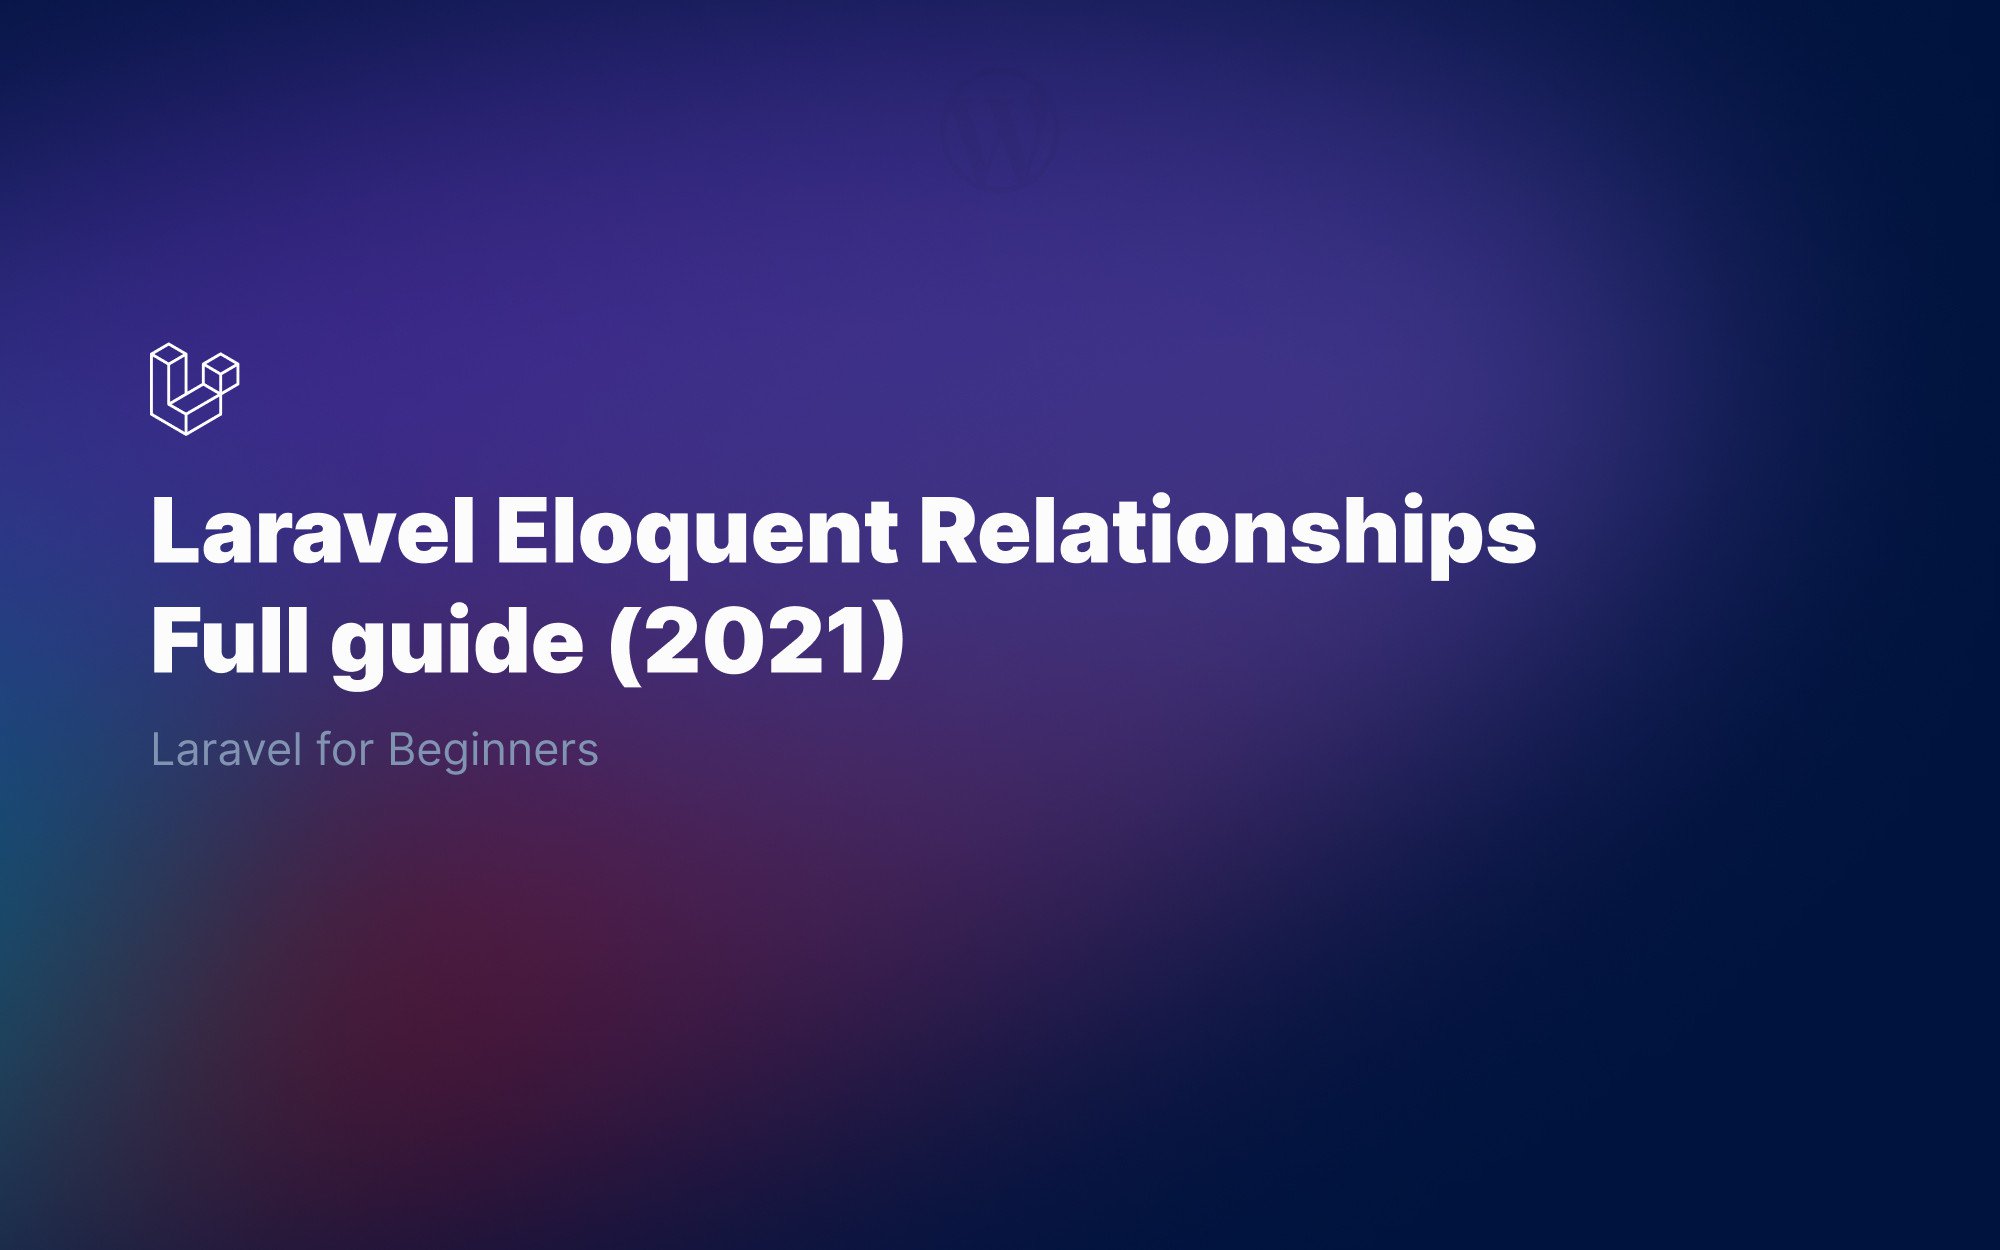 Laravel Eloquent relationships for beginners - Full 2023 Guide